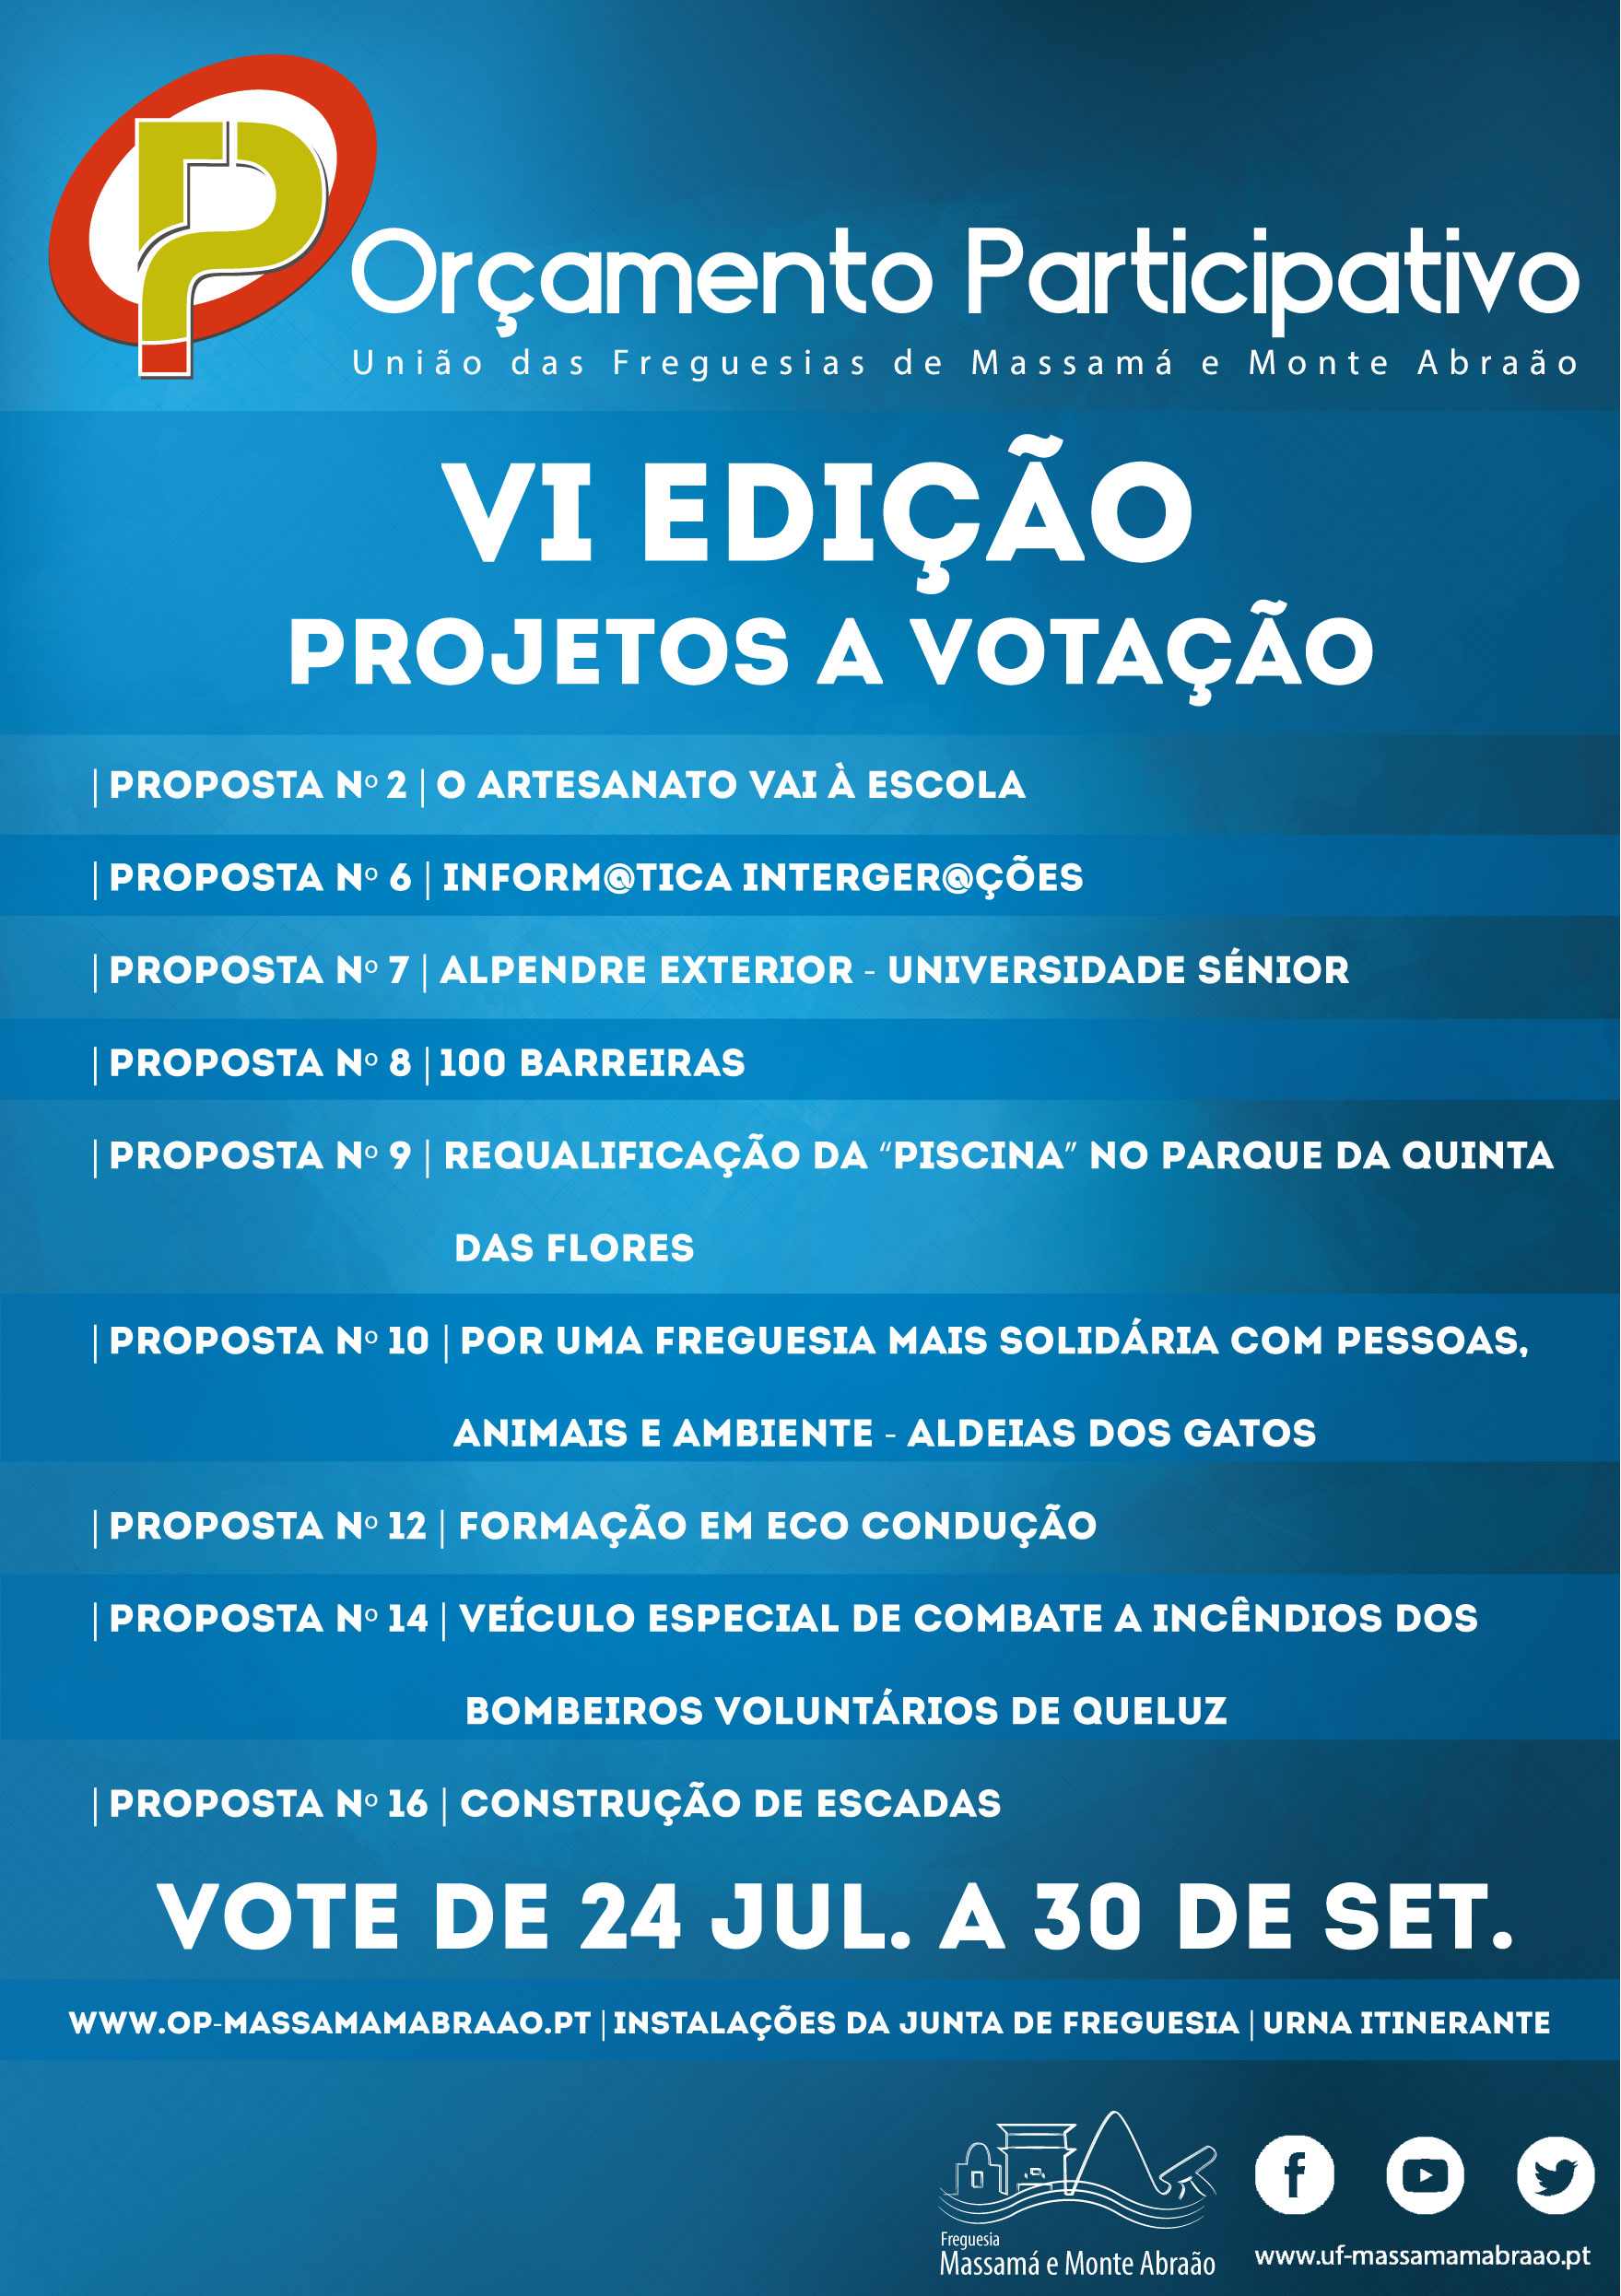 VI Edição do Orçamento Participativo de Massamá e Monte Abraão - Fase de votação